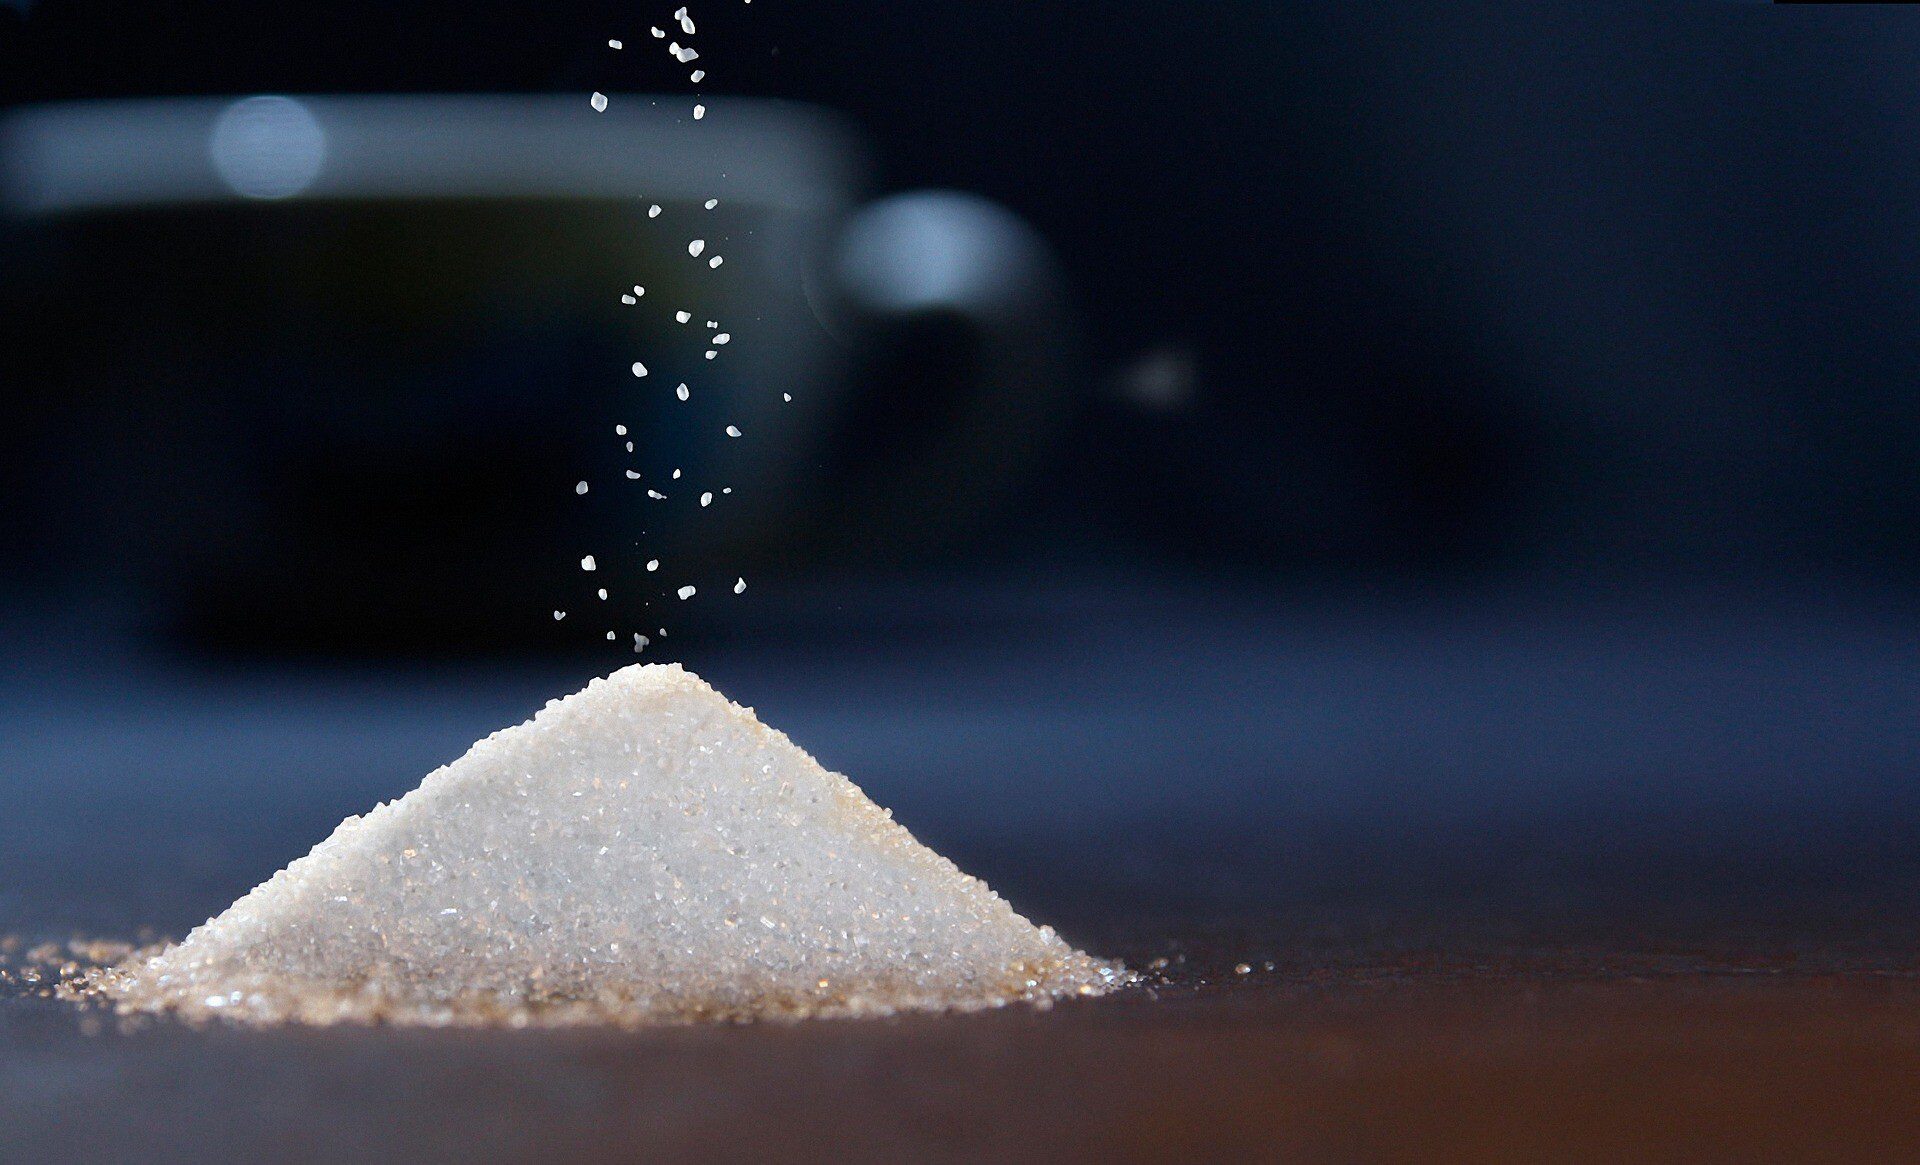 Zucker oder Zuckerersatz? Man sieht es nicht